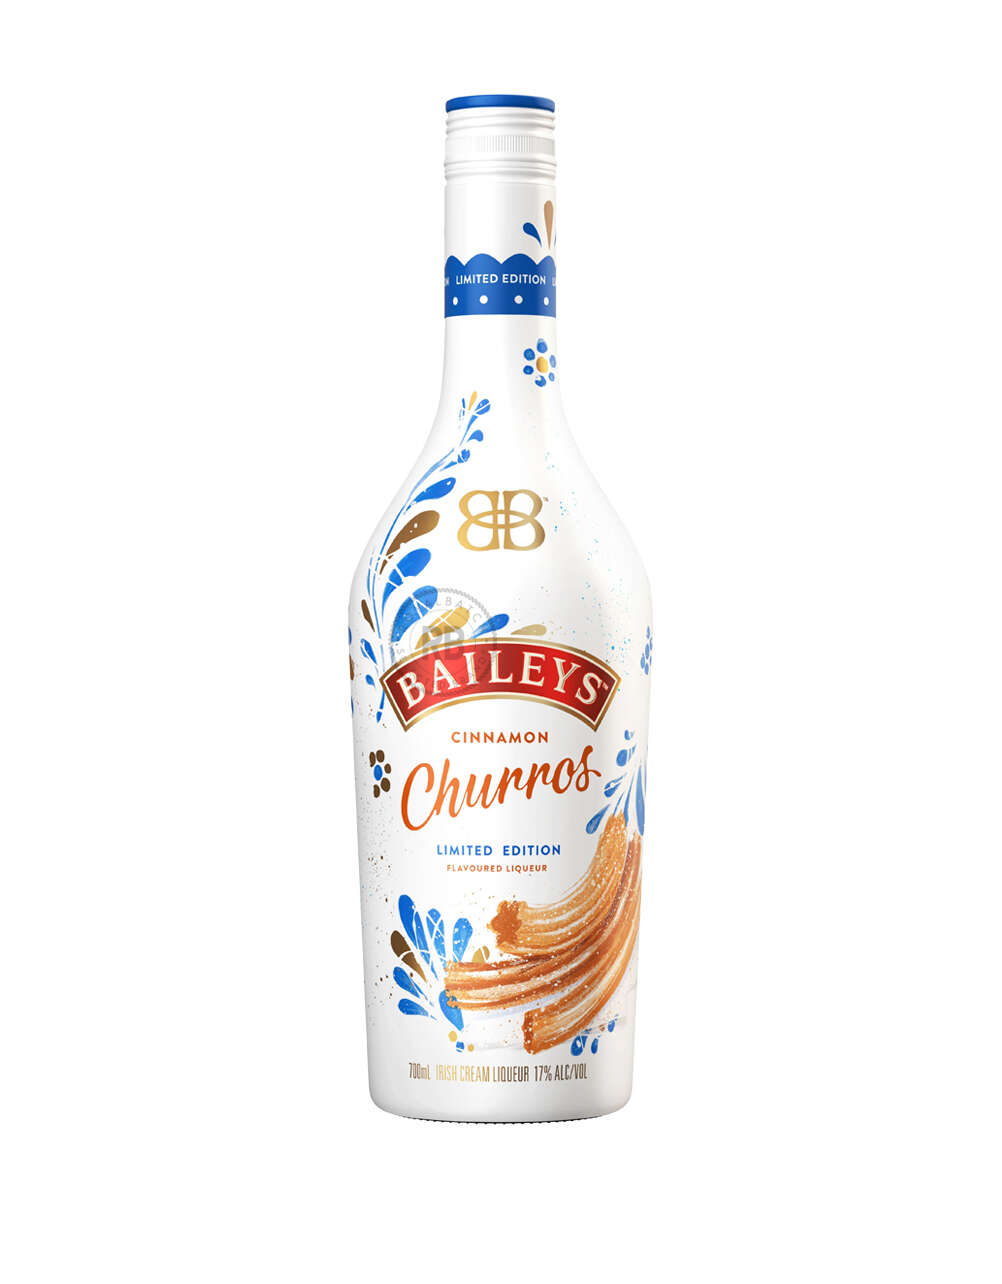 Baileys Cinnamon Churros Flavoured Limited Edition Liqueur